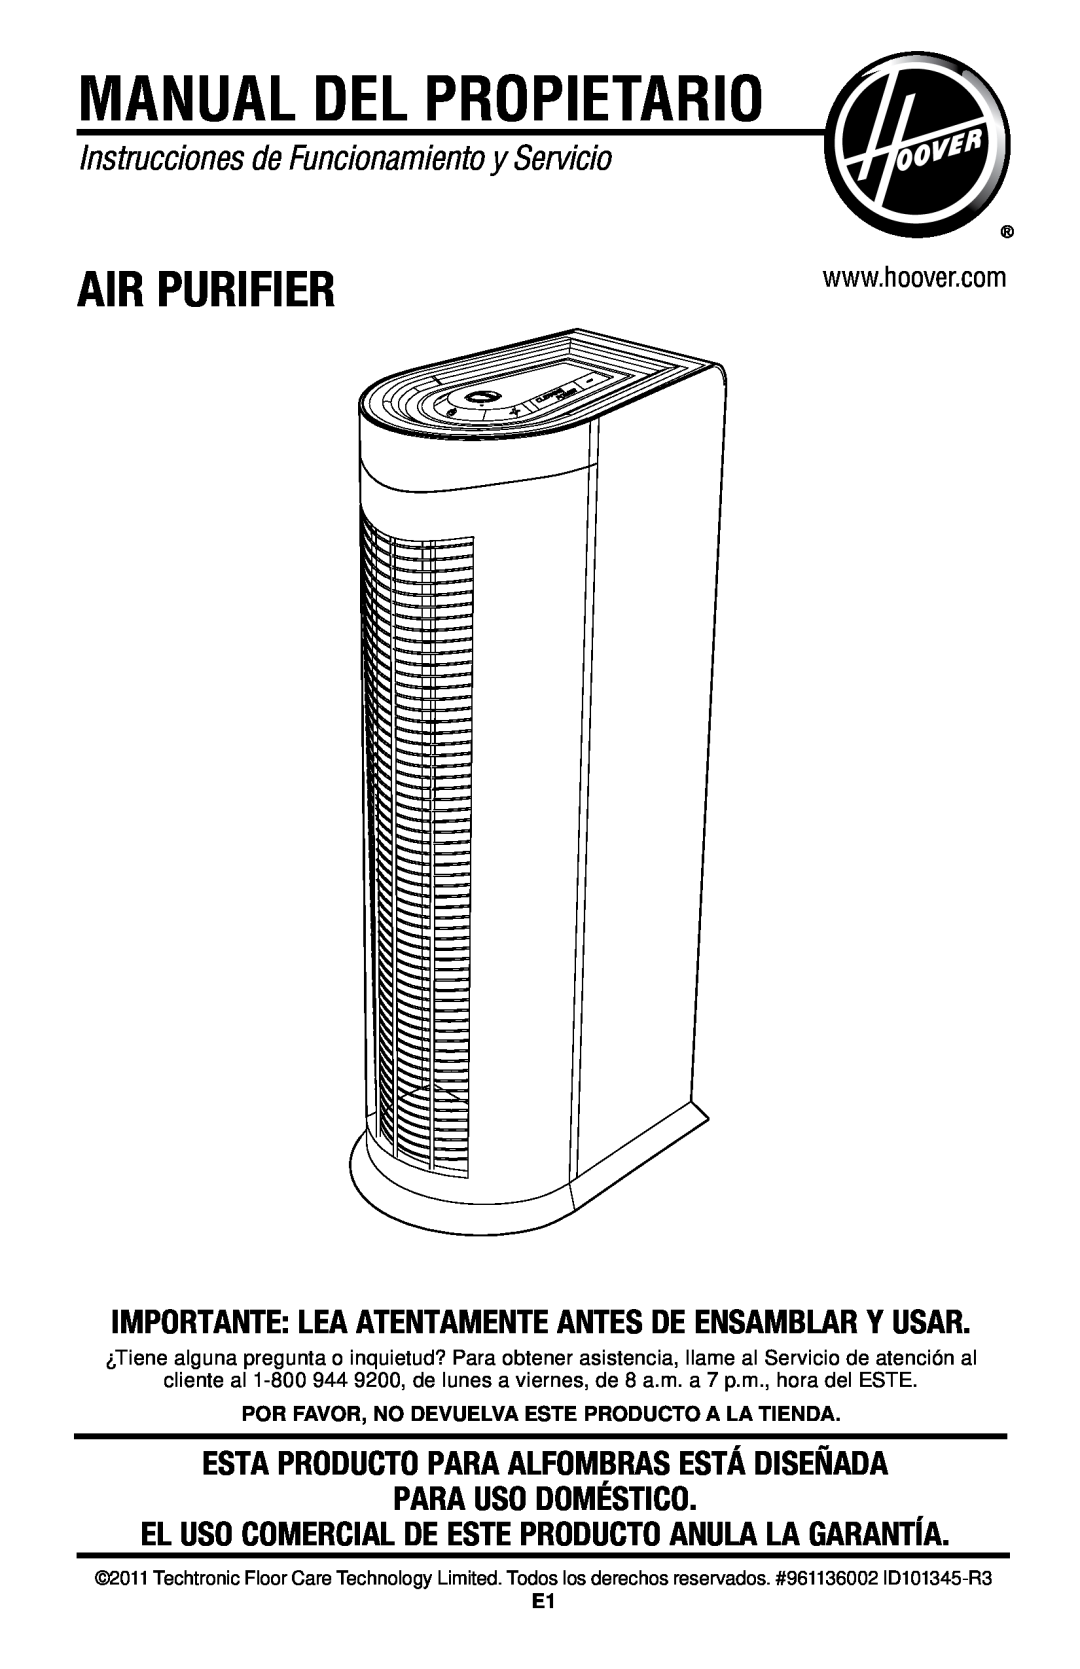 Hoover Air Cleaner Manual Del Propietario, Instrucciones de Funcionamiento y Servicio, Para Uso Doméstico, Air Purifier 